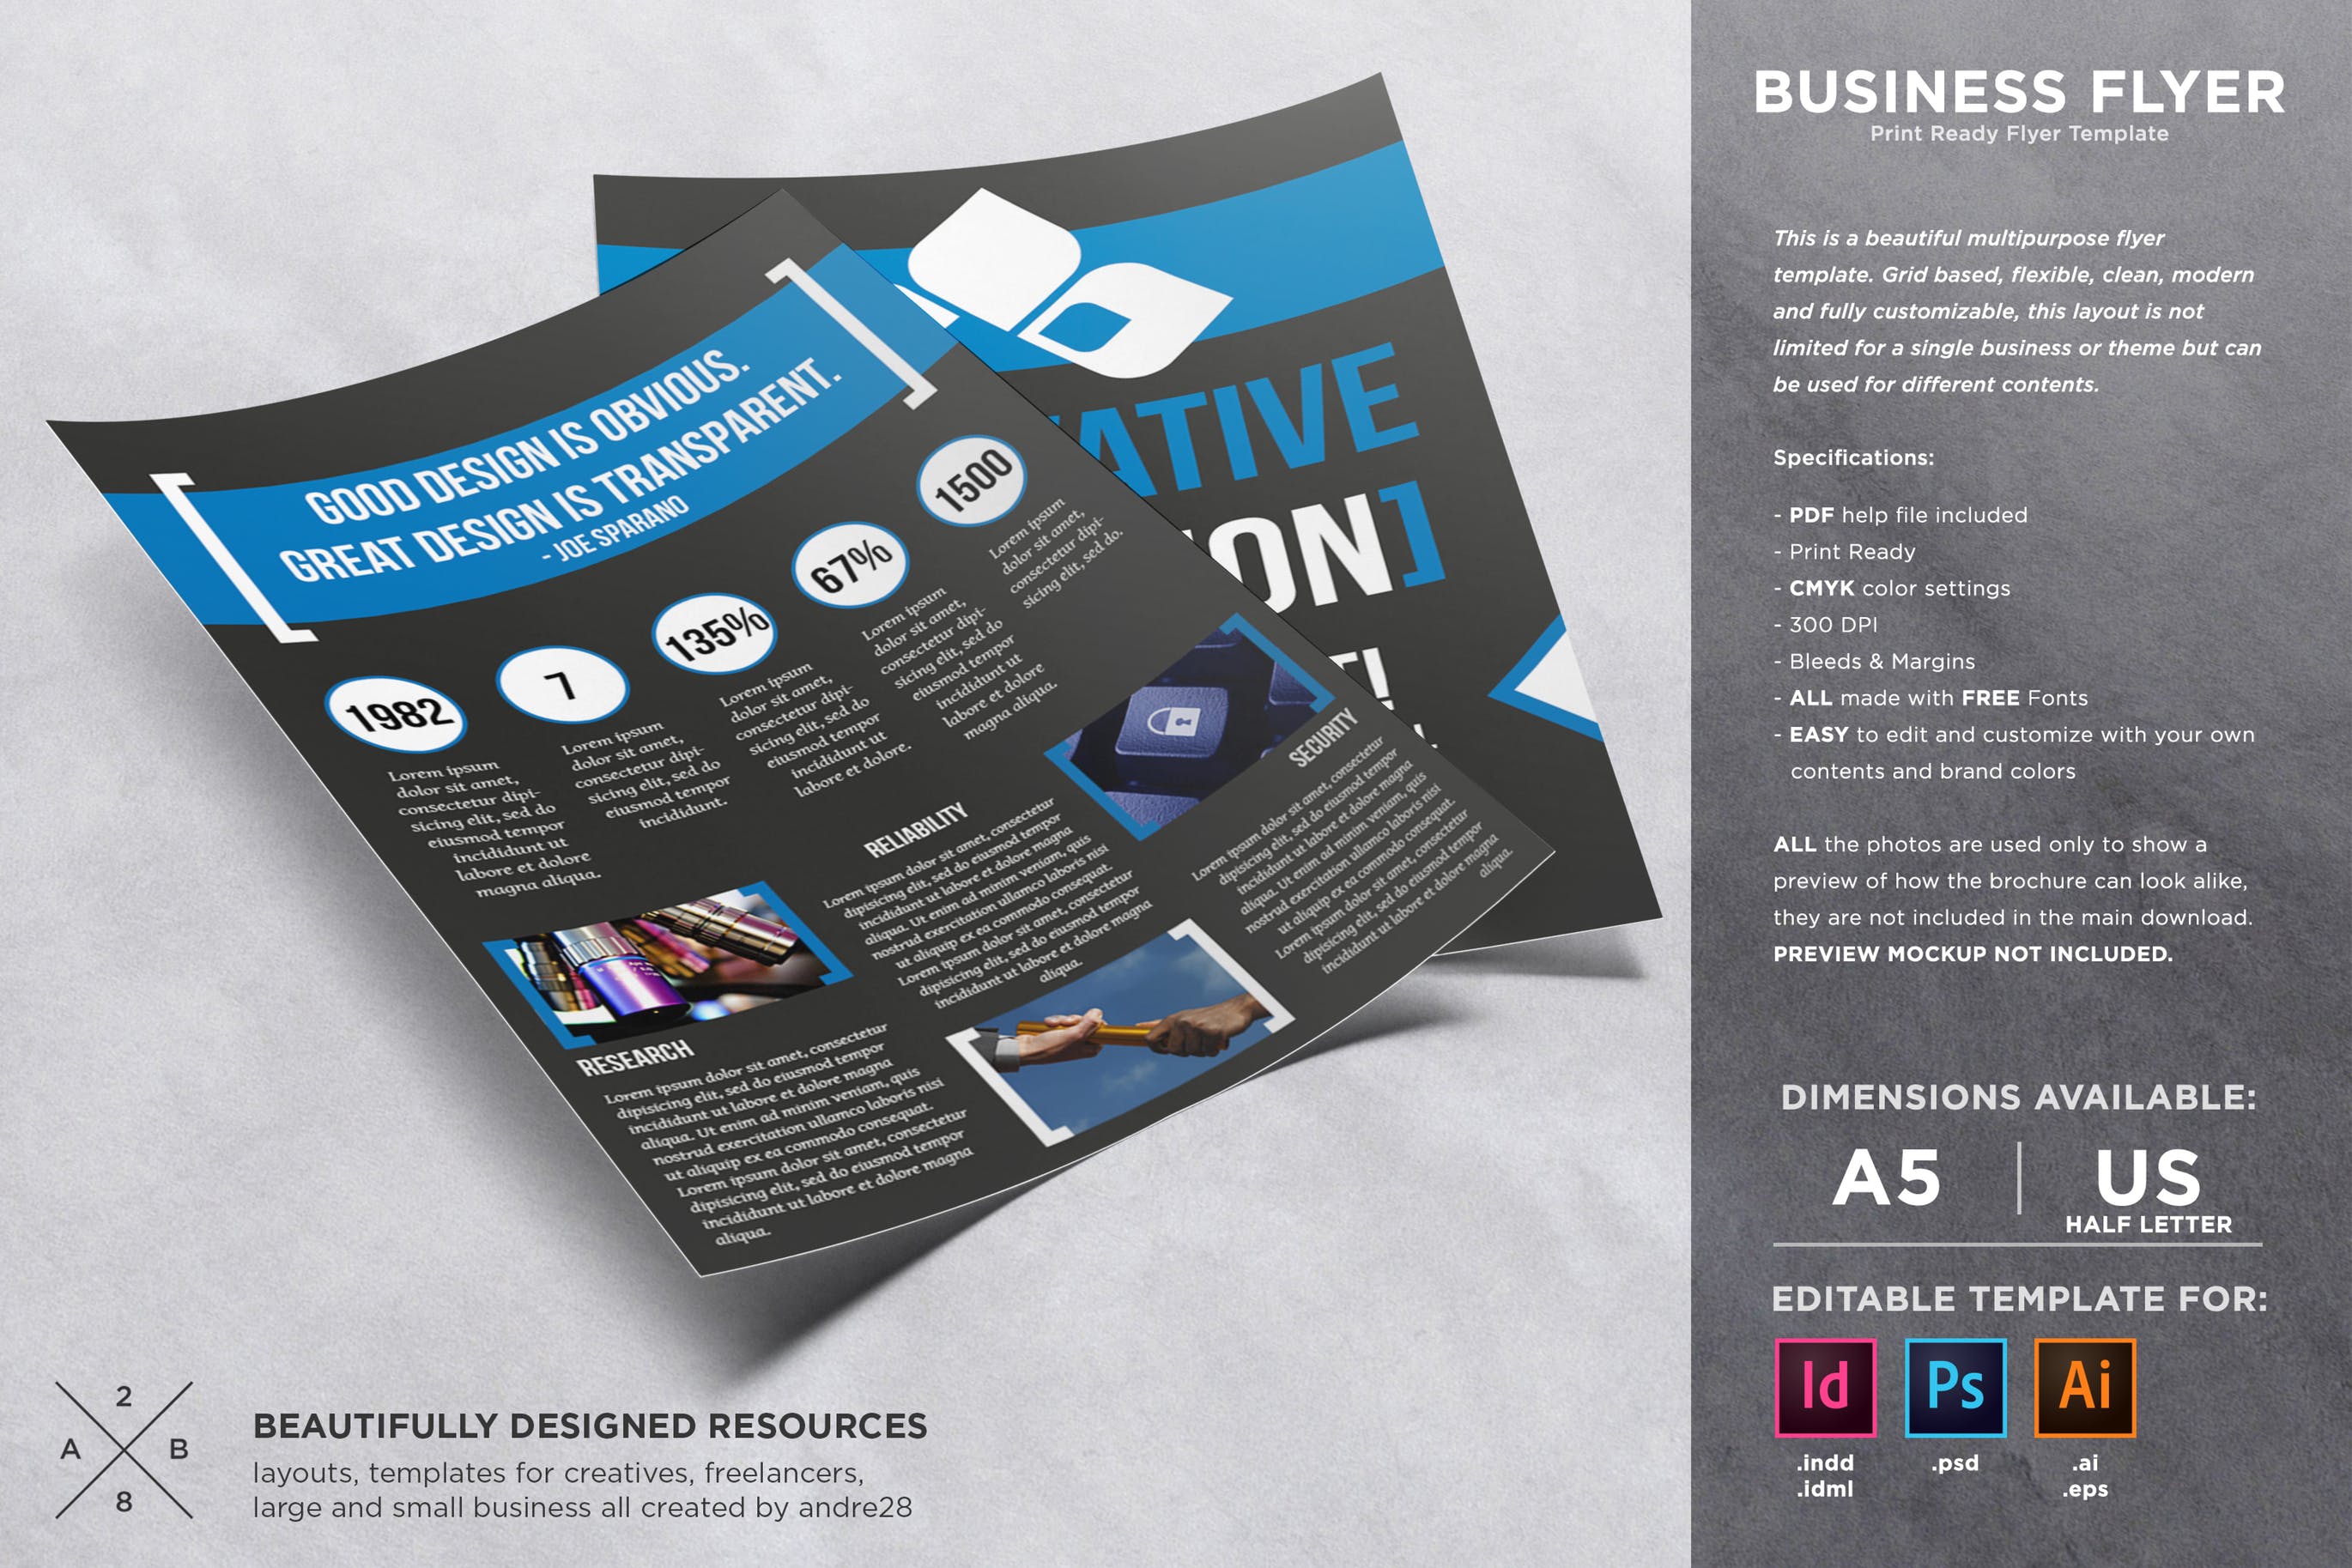 经典实用企业业务/简介宣传单设计模板 Business Flyer Template插图